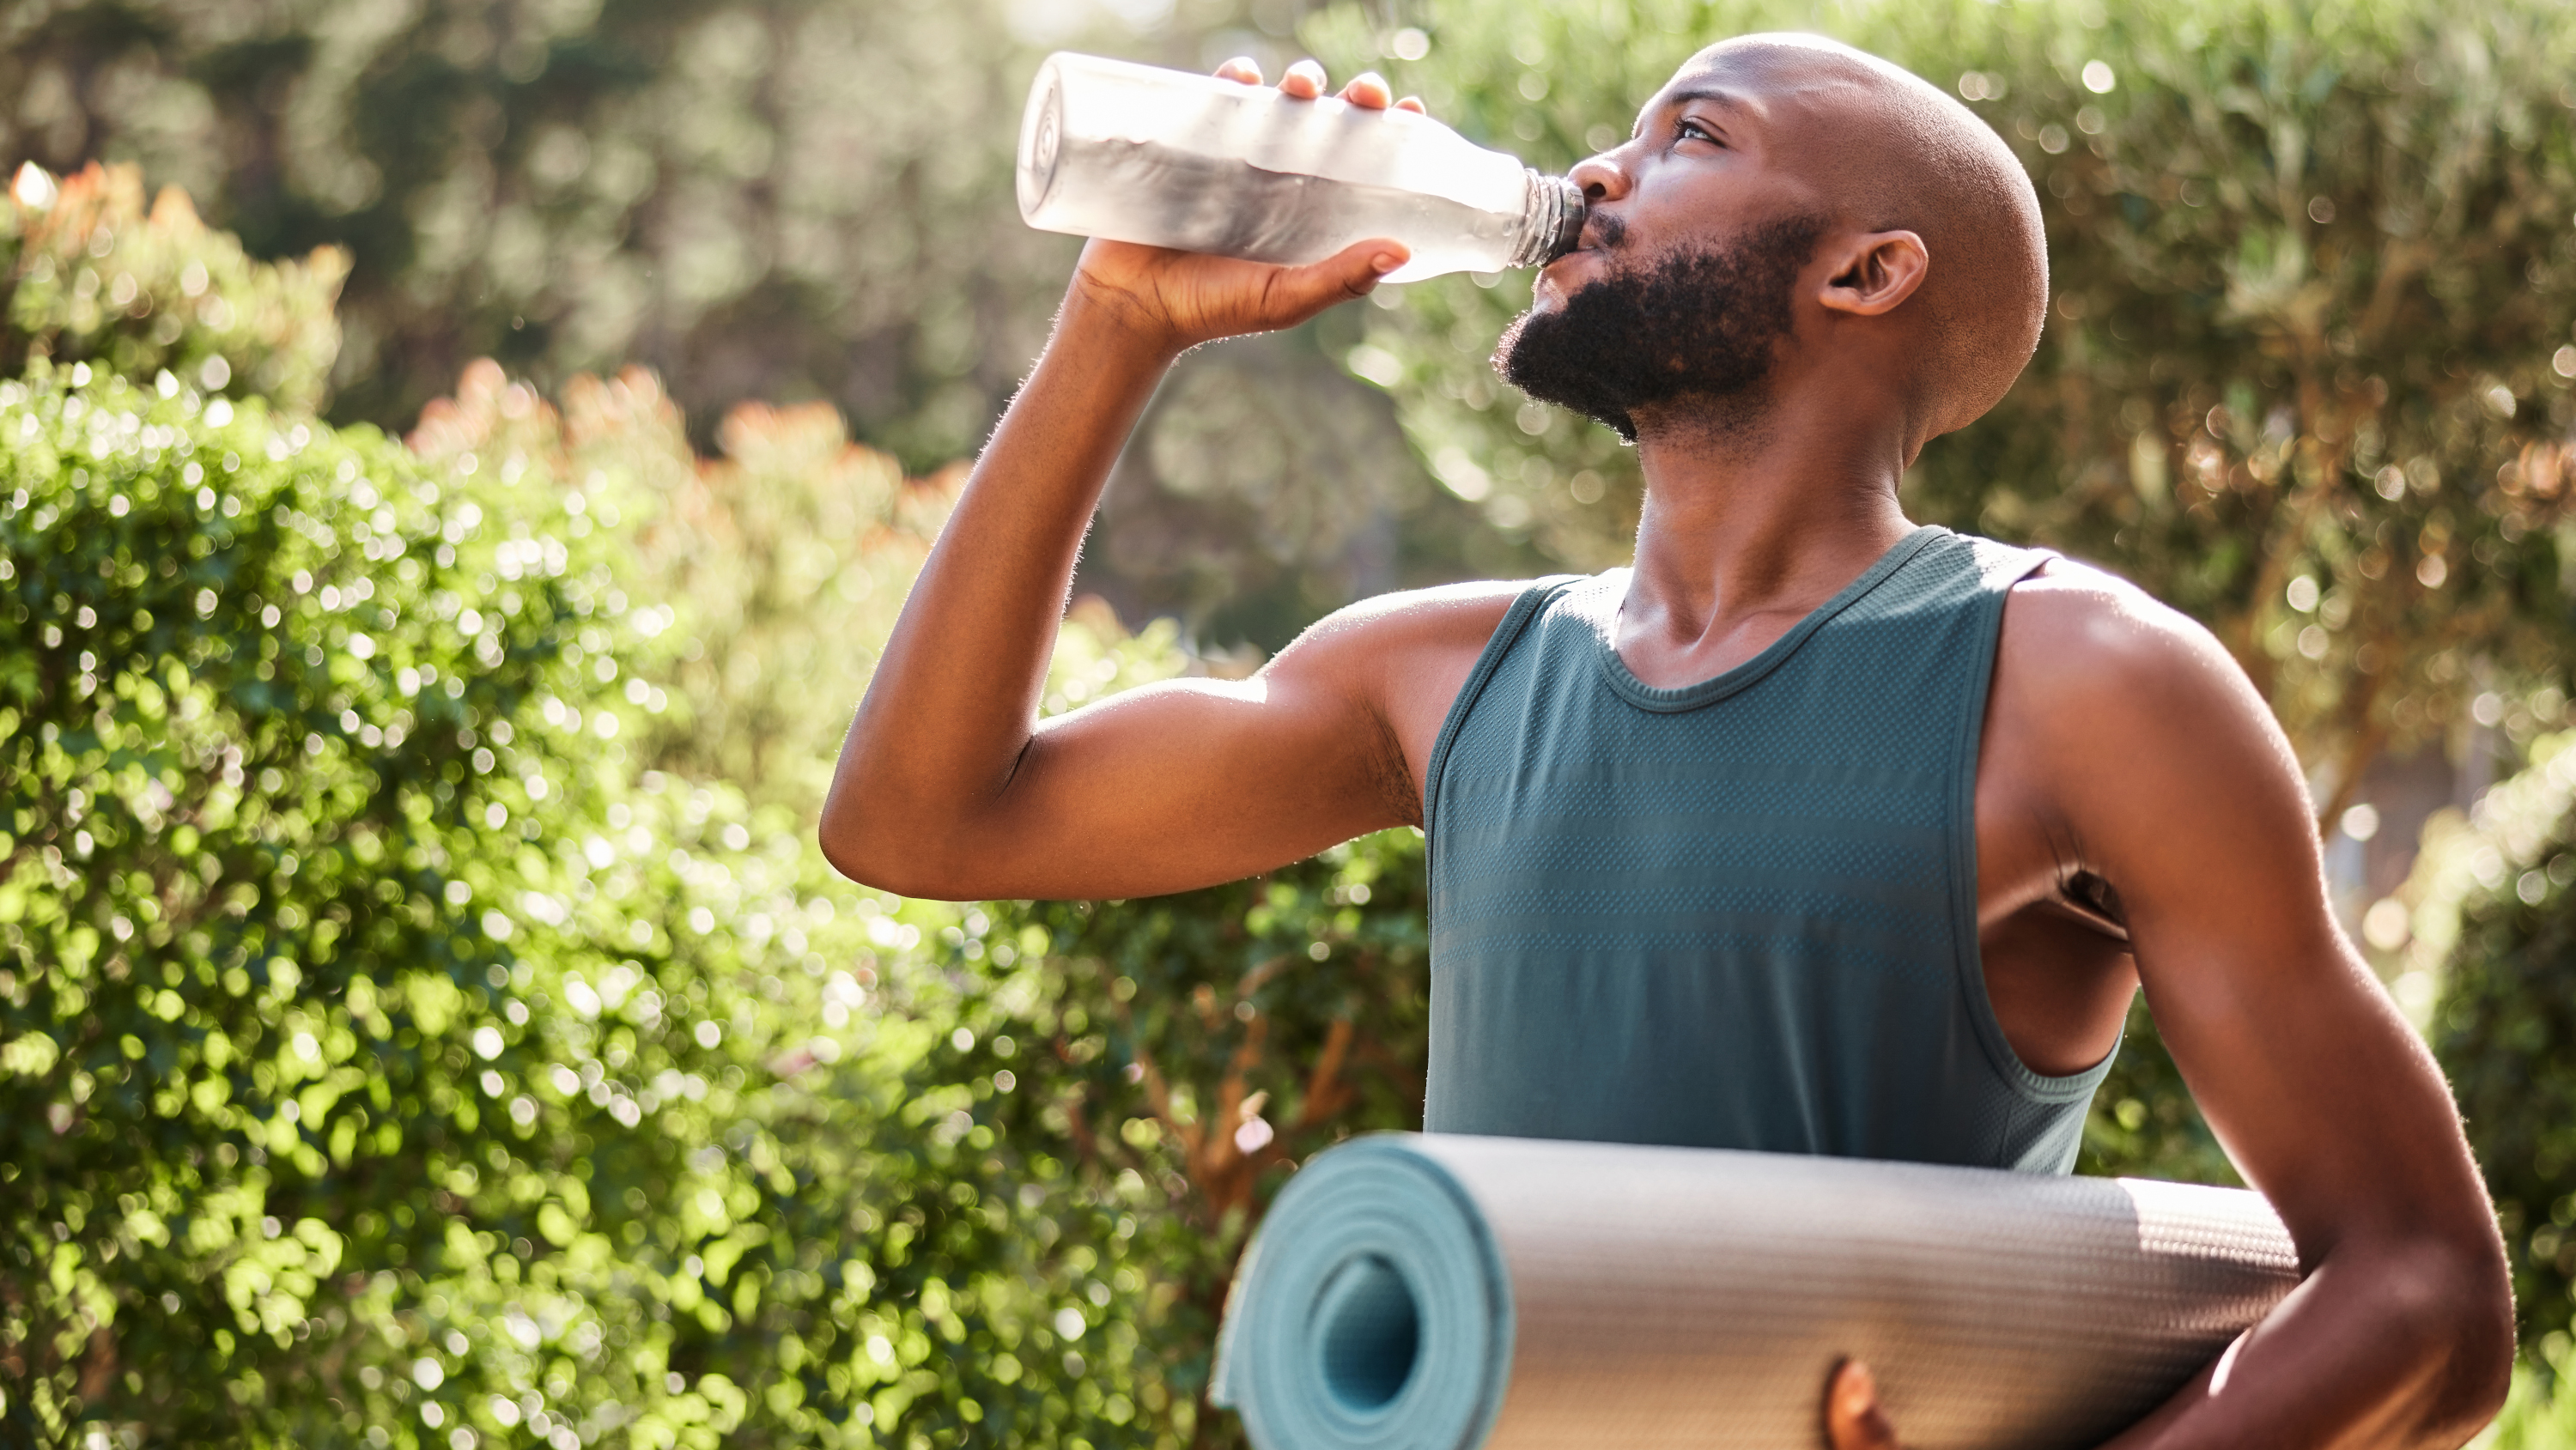 bir elinde yoga matı taşıyan, diğer elinde ise su şişesinden su içen bir adamın fotoğrafı